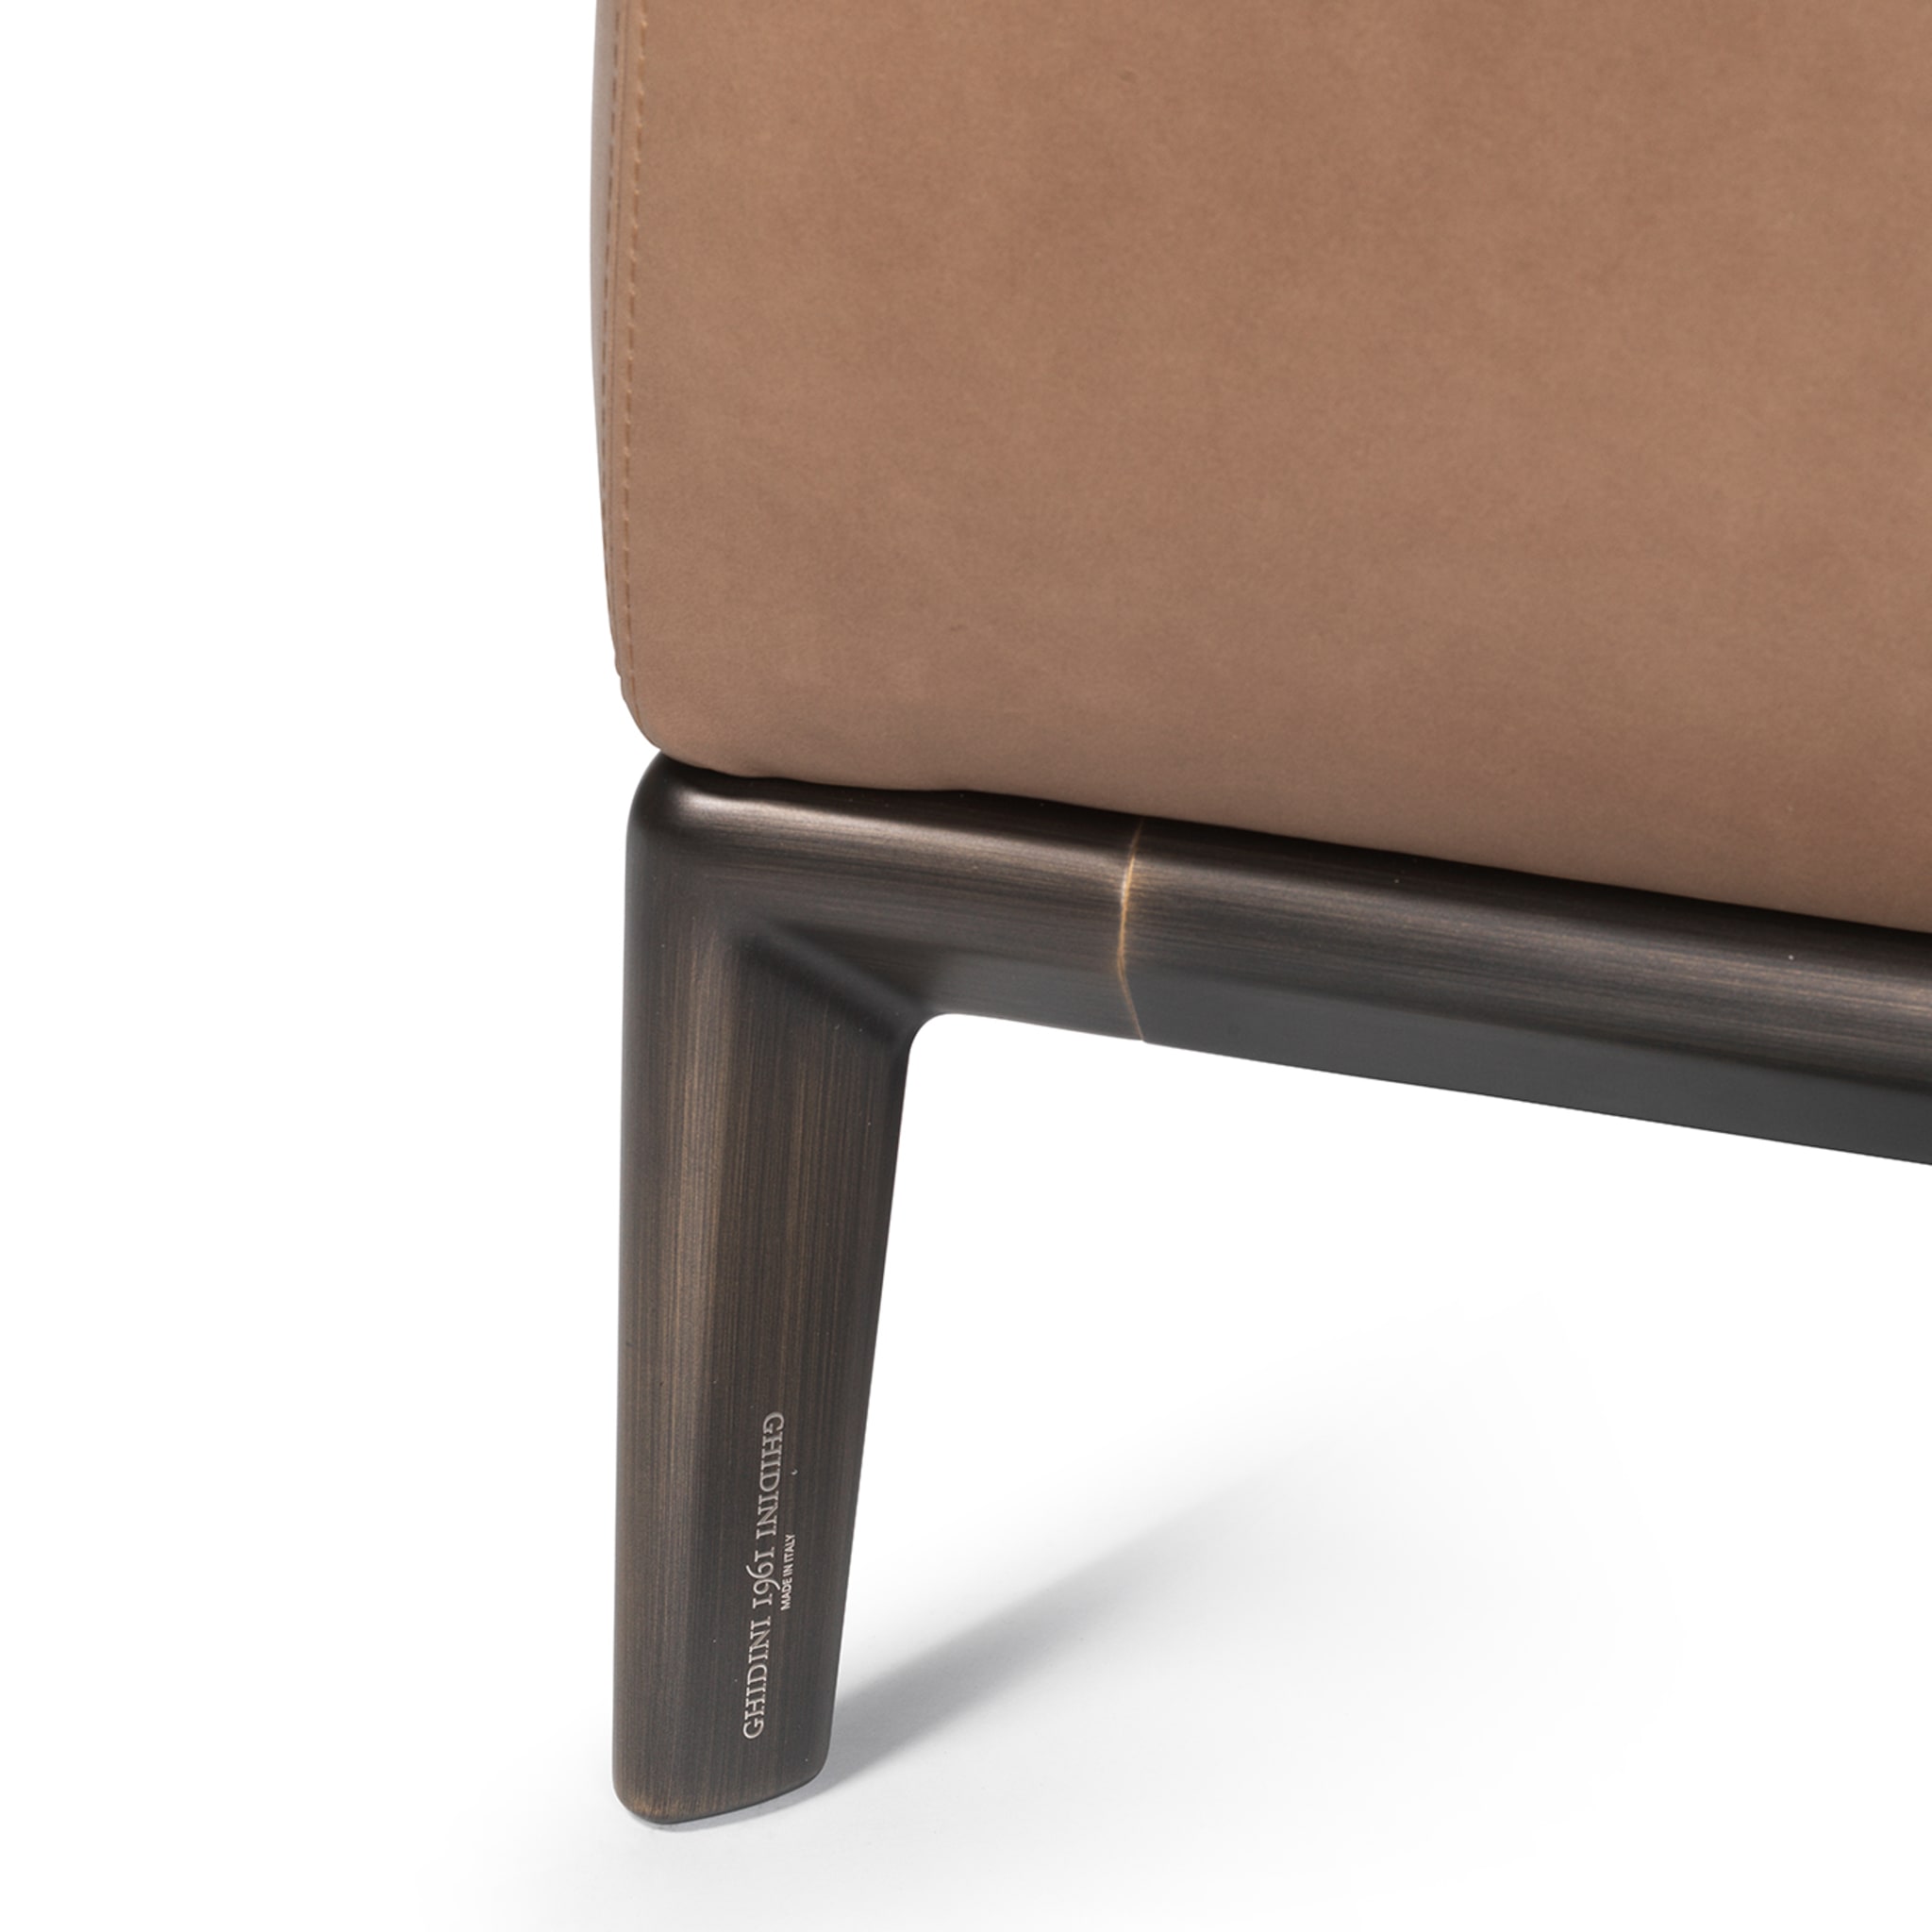 Milo Brown Leather Sofa by Stefano Giovannoni - Alternative view 1